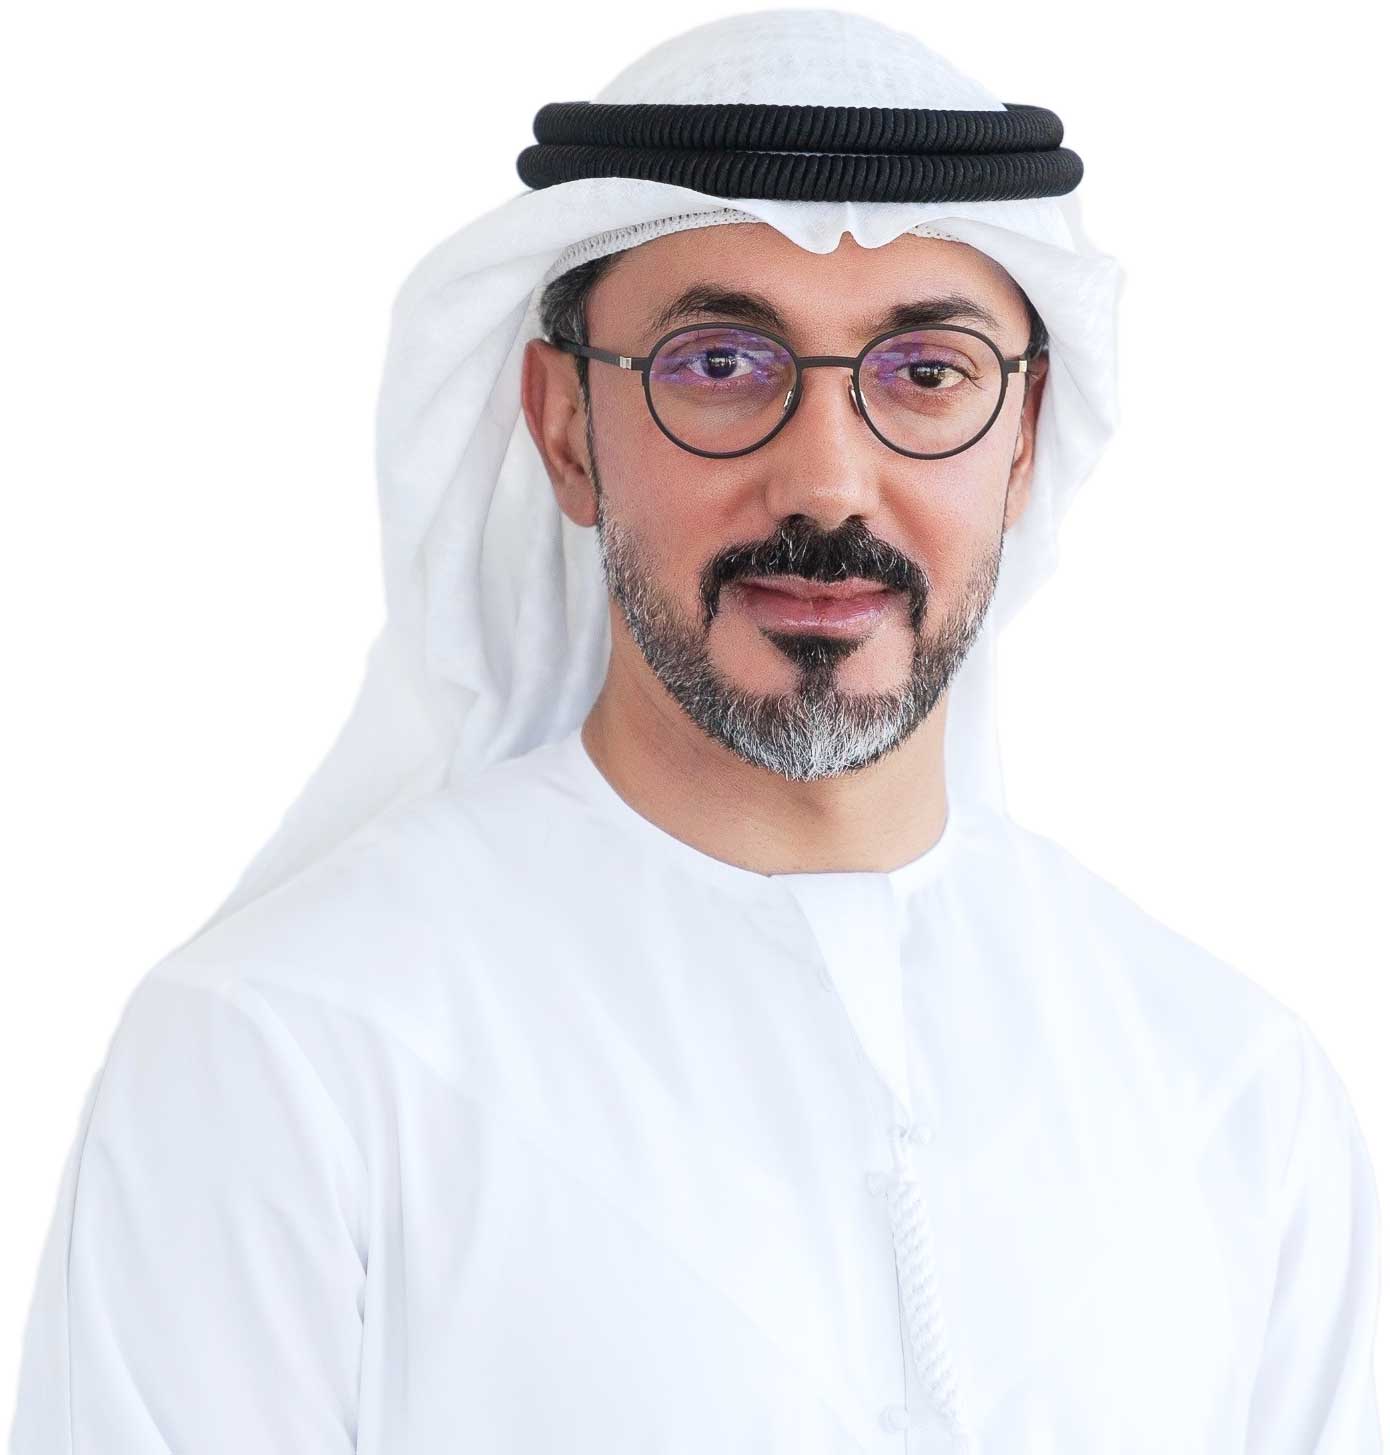 سوق دبي: معايير لجنة أسواق المال الخليجية طوعية